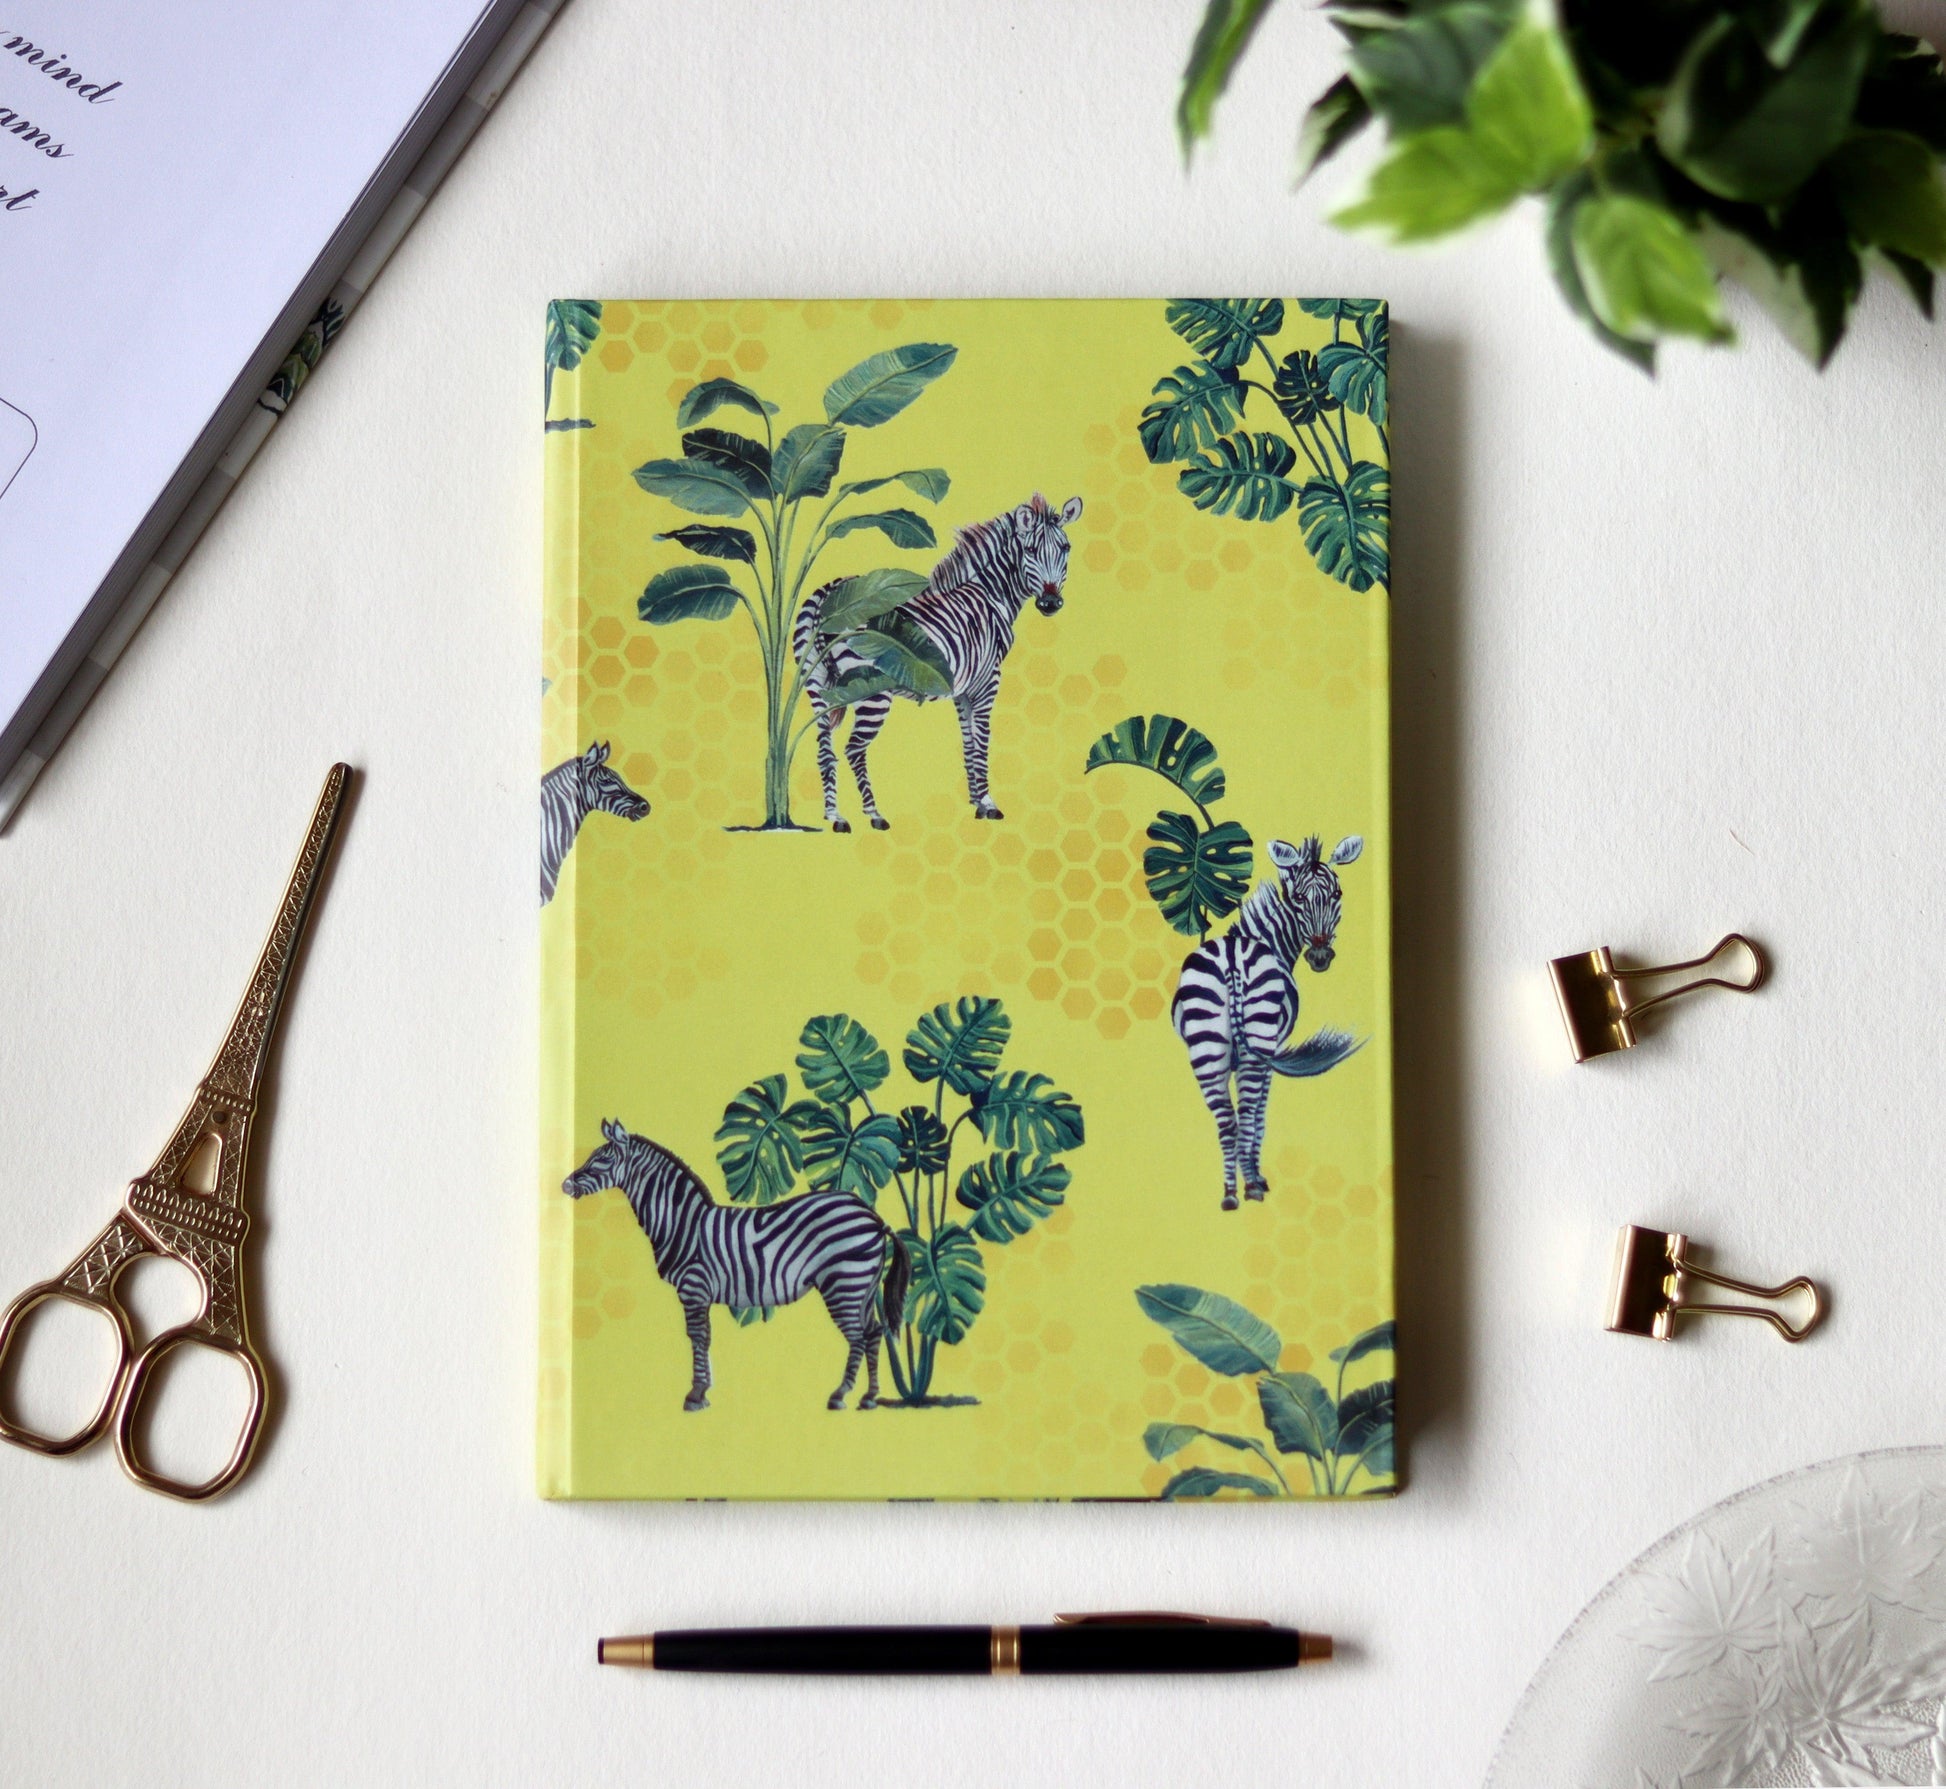 The Zebra Print Diary - Strokes by Namrata Mehta